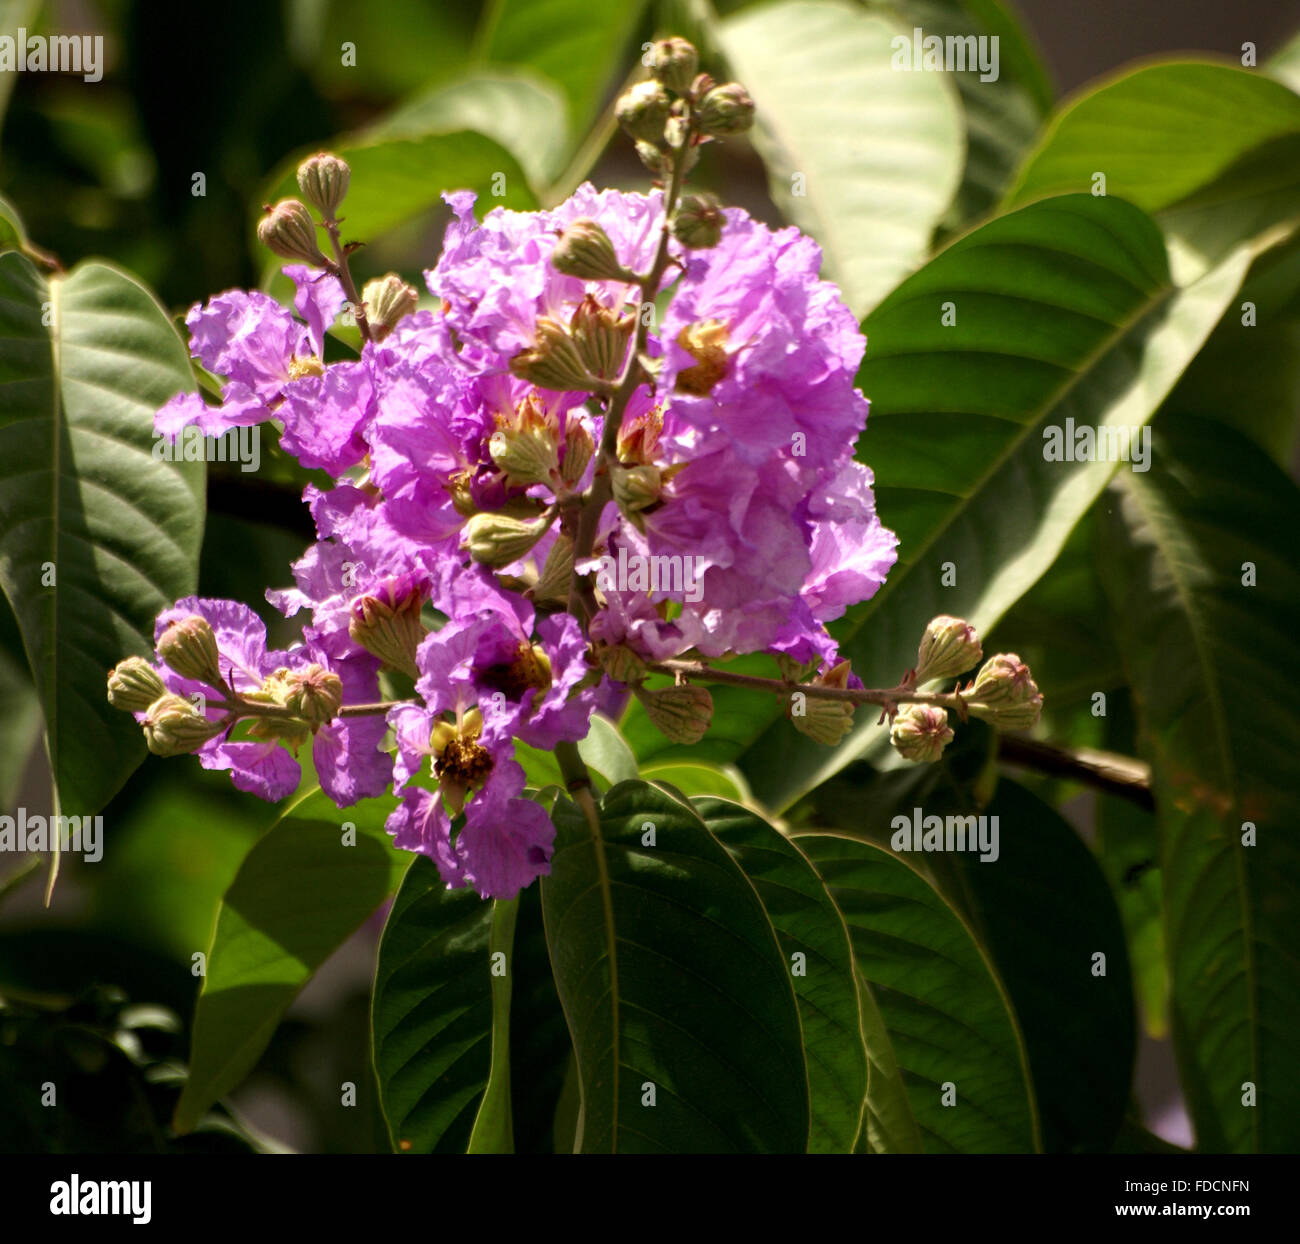 Lagerstroemia speciosa, orgoglio di India, albero con grande oblungo ellittica di forma ovale di foglie, fiori viola in pannocchie Foto Stock